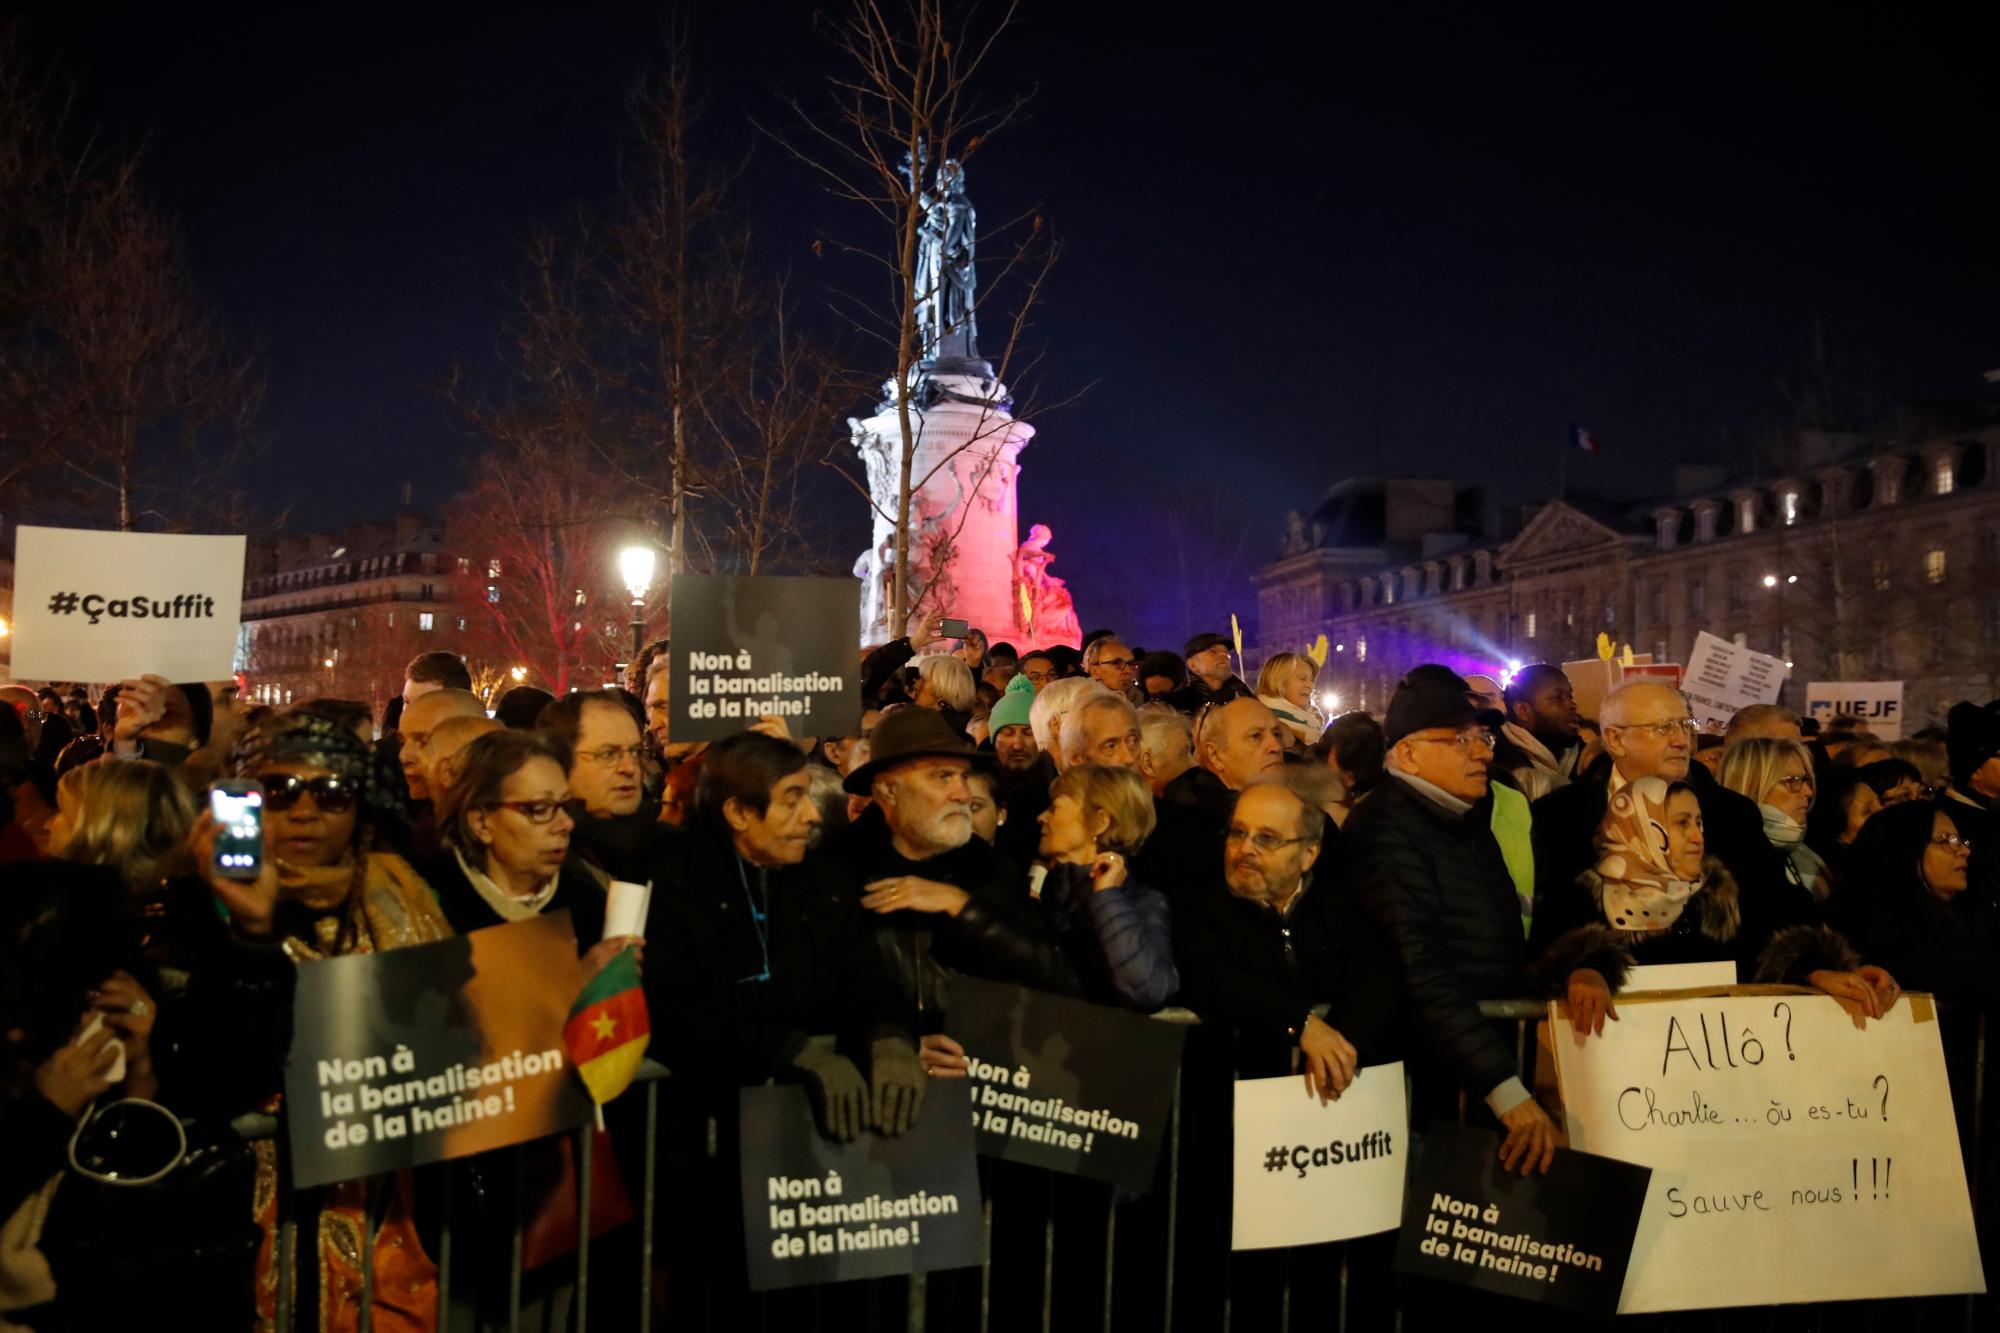 La gente se reúne en la plaza de la República para protestar contra el antisemitismo, en París, Francia. En París y en decenas de otras ciudades francesas, ciudadanos y funcionarios de todo el espectro político preparado el martes para marchar y reunirse contra el antisemitismo, luego de una serie de actos antisemitas que conmocionaron a la nación.